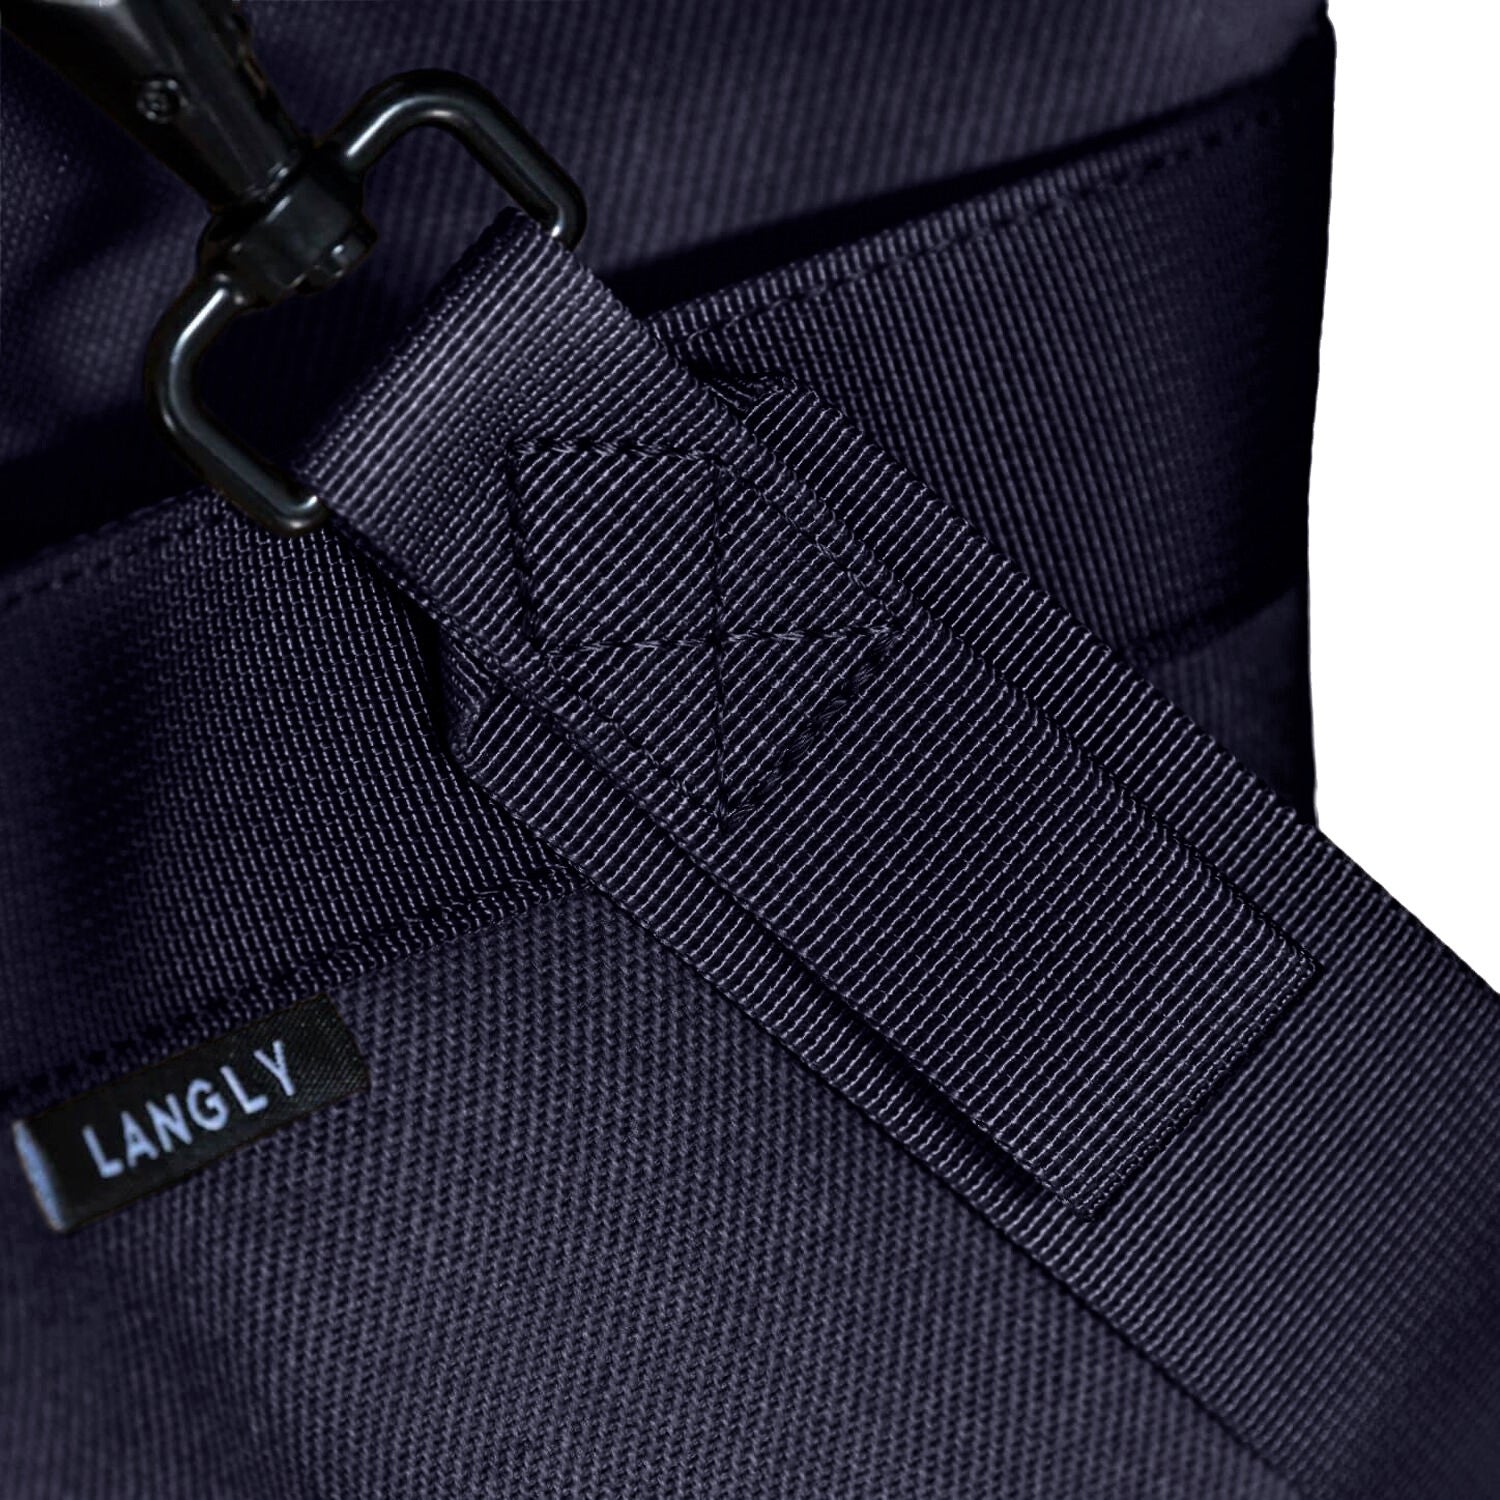 Langly Weekender Duffle Bag (Navy)